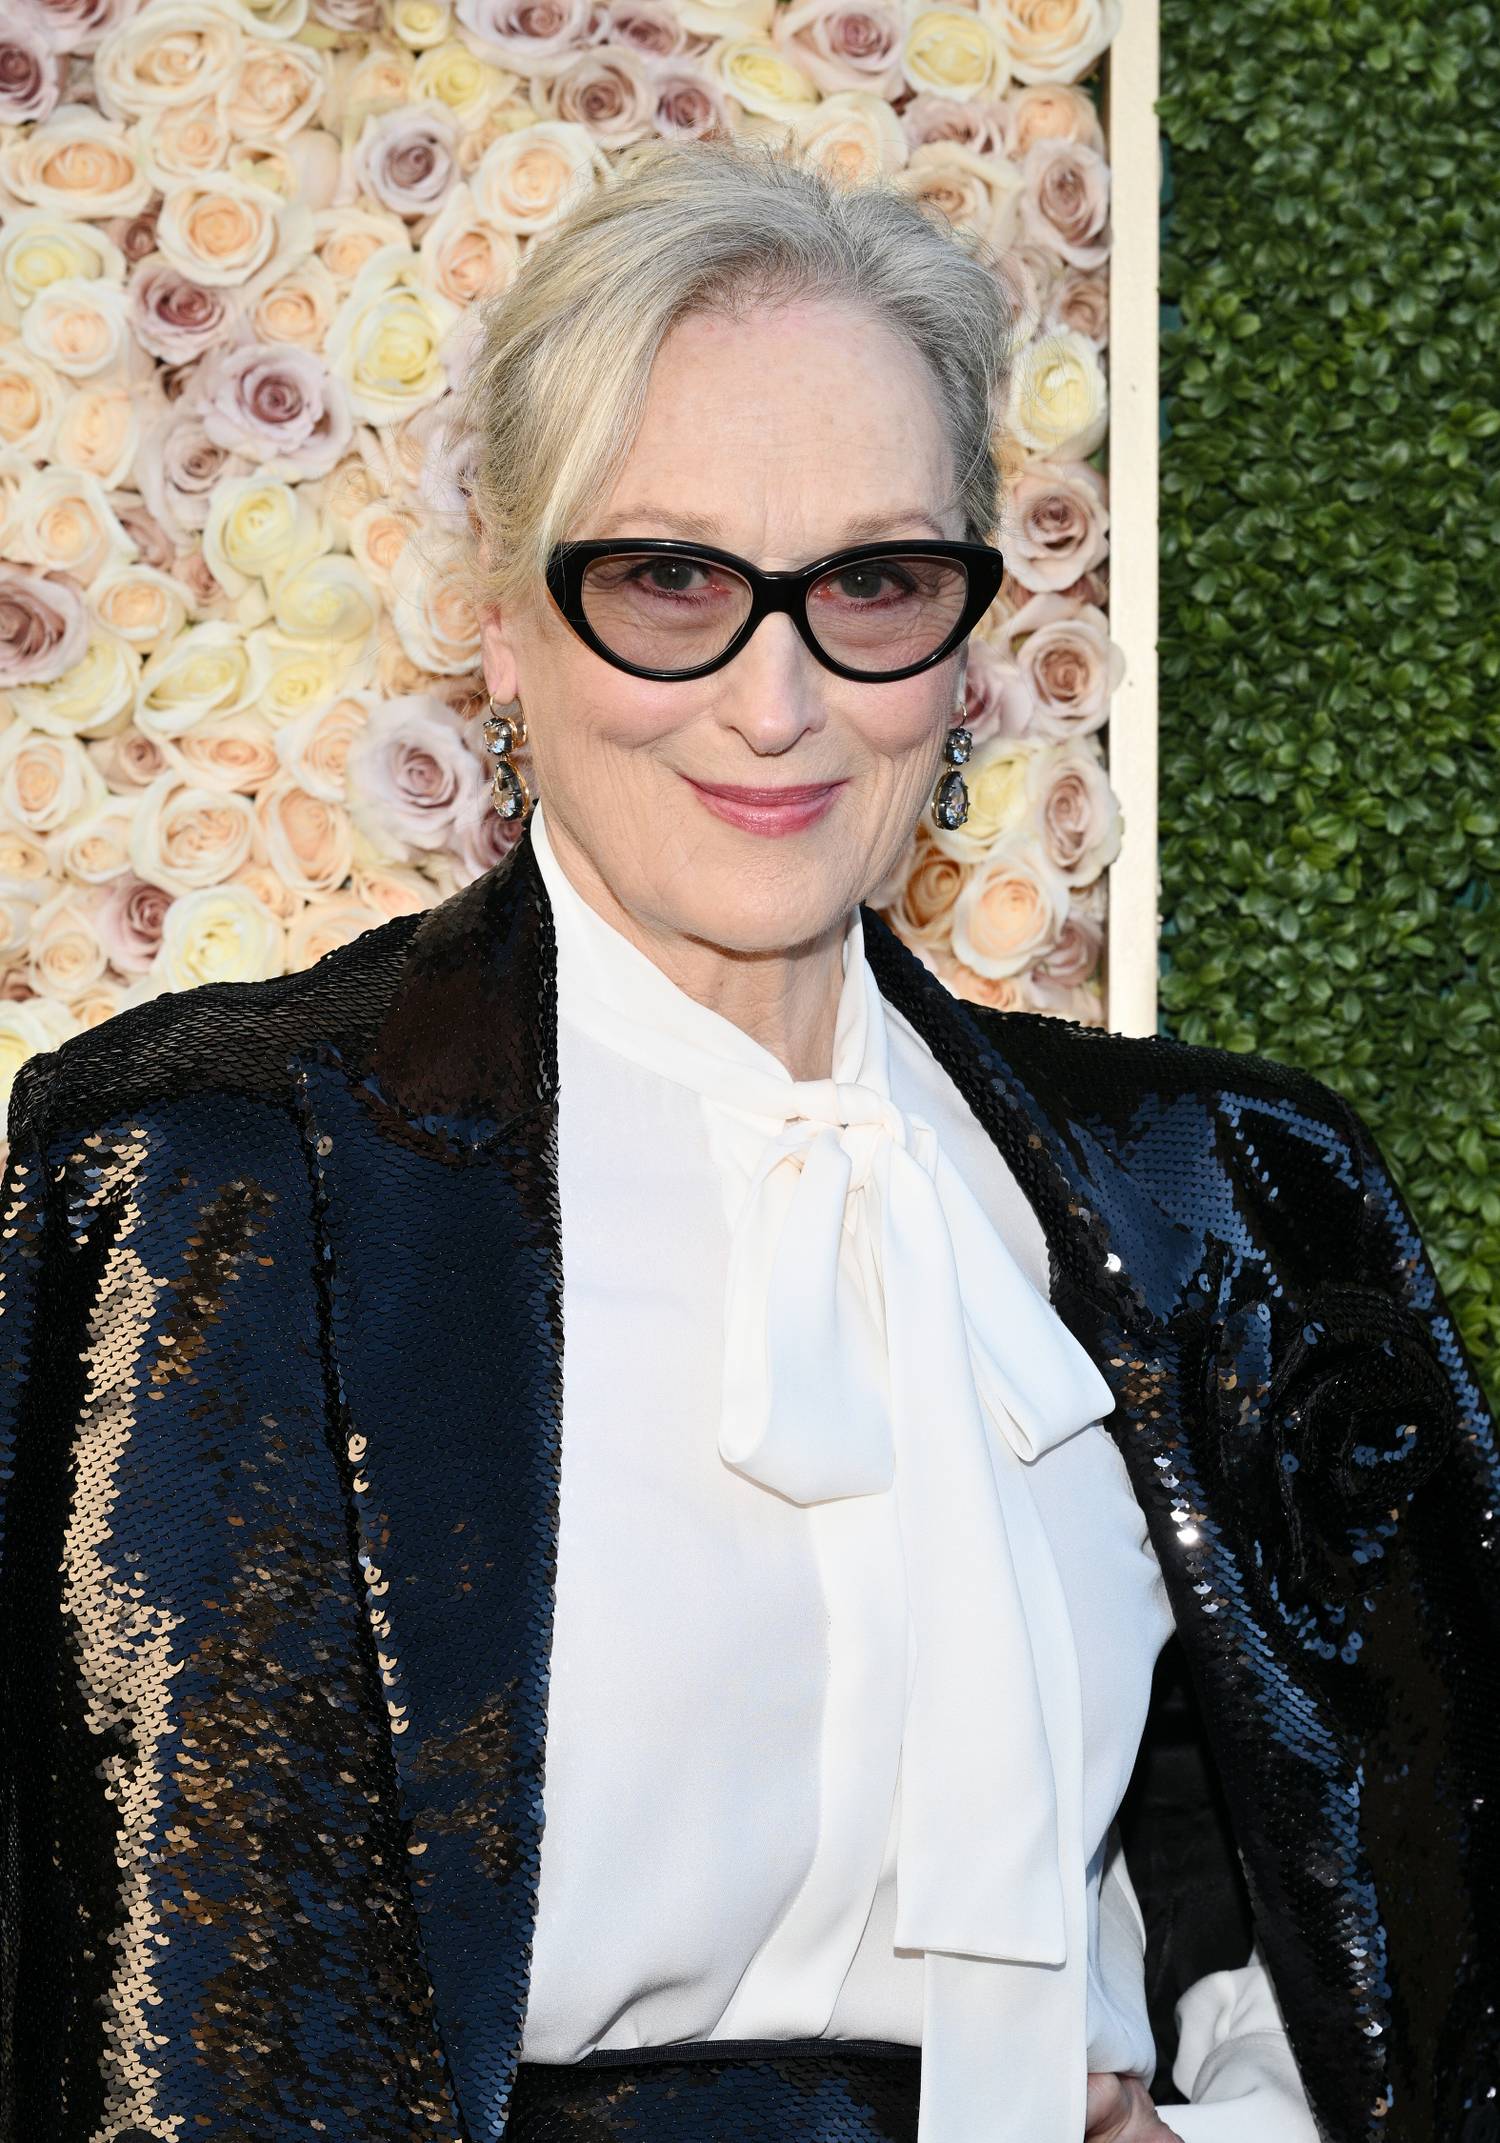 A 72 éves, gyönyörű színésznő, Meryl Streep az egész világot lenyűgözte tehetségével, nyitottságával és kedvességével. Talán ezért is nem gondolná róla senki, hogy valójában az introvertáltak táborát erősíti.